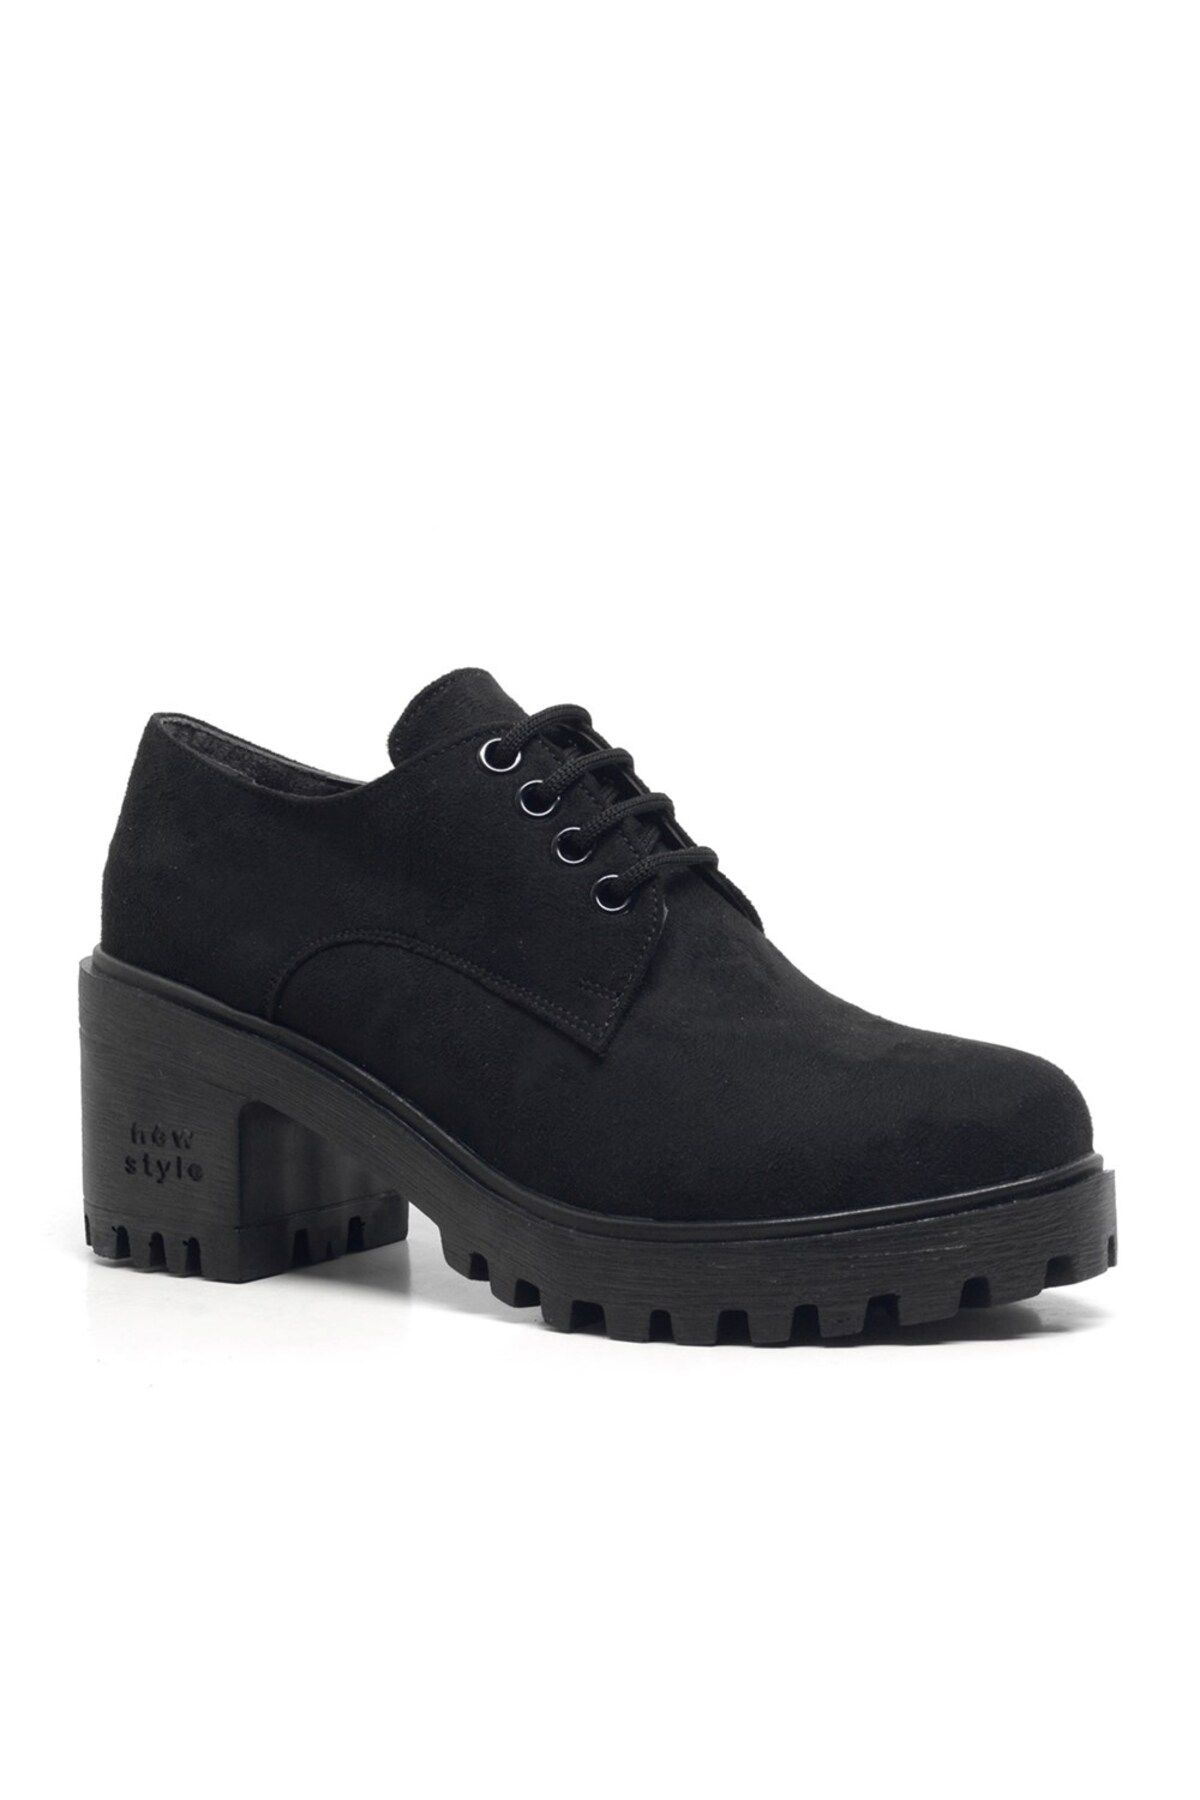 Shoes Center Siyah Süet Bağcıklı Topuklu Oxford Kadın Ayakkabı